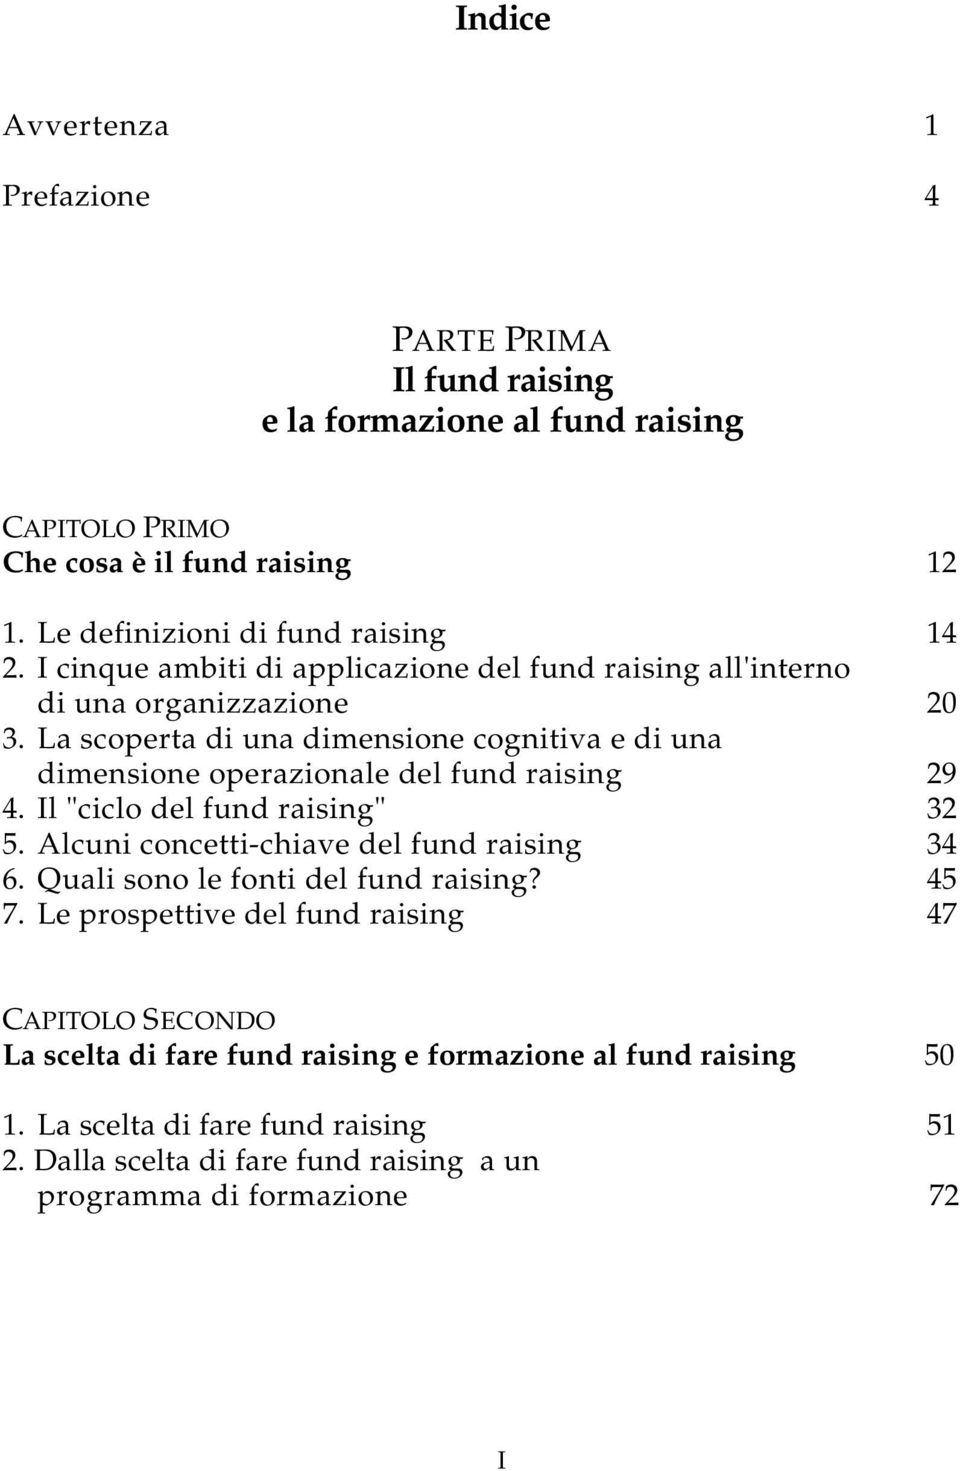 La scoperta di una dimensione cognitiva e di una dimensione operazionale del fund raising 29 4. Il "ciclo del fund raising" 32 5. Alcuni concetti-chiave del fund raising 34 6.